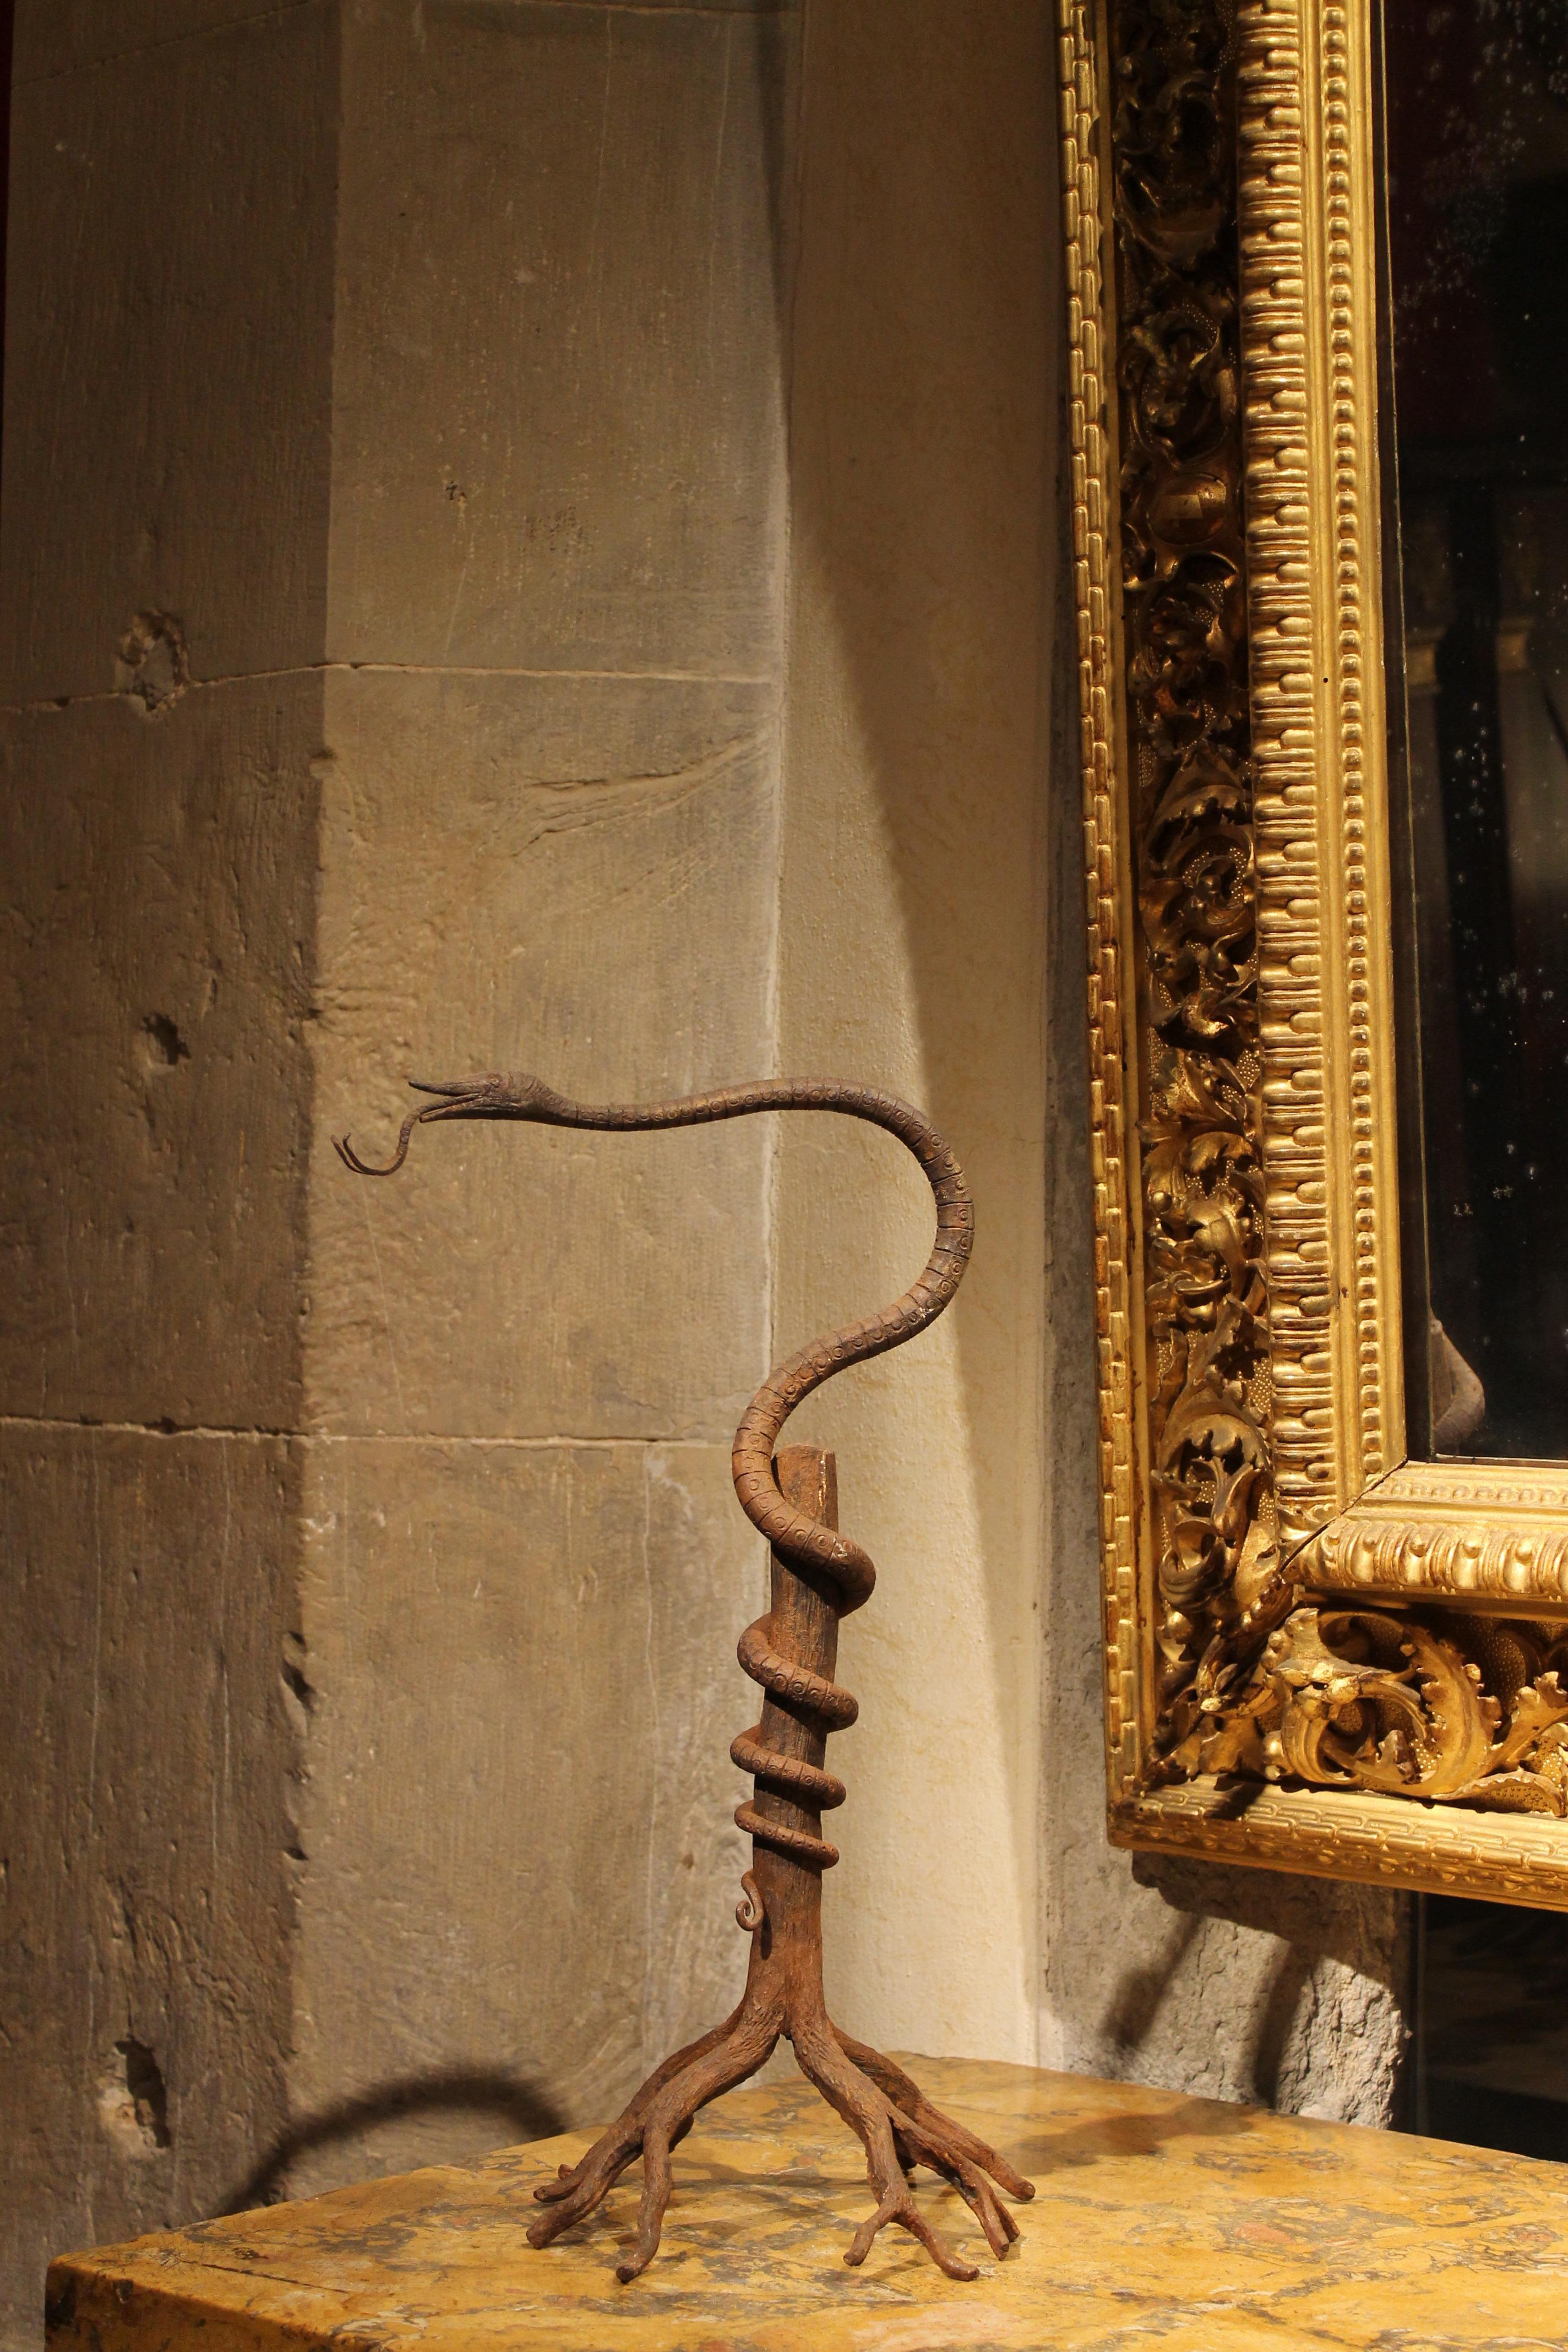 Cette sculpture en fer forgé de style Art nouveau européen en forme de serpent enroulé sur un tronc d'arbre est un élément décoratif original et merveilleux, une pièce d'art de conversation, une sculpture animale antique inhabituelle qui présente